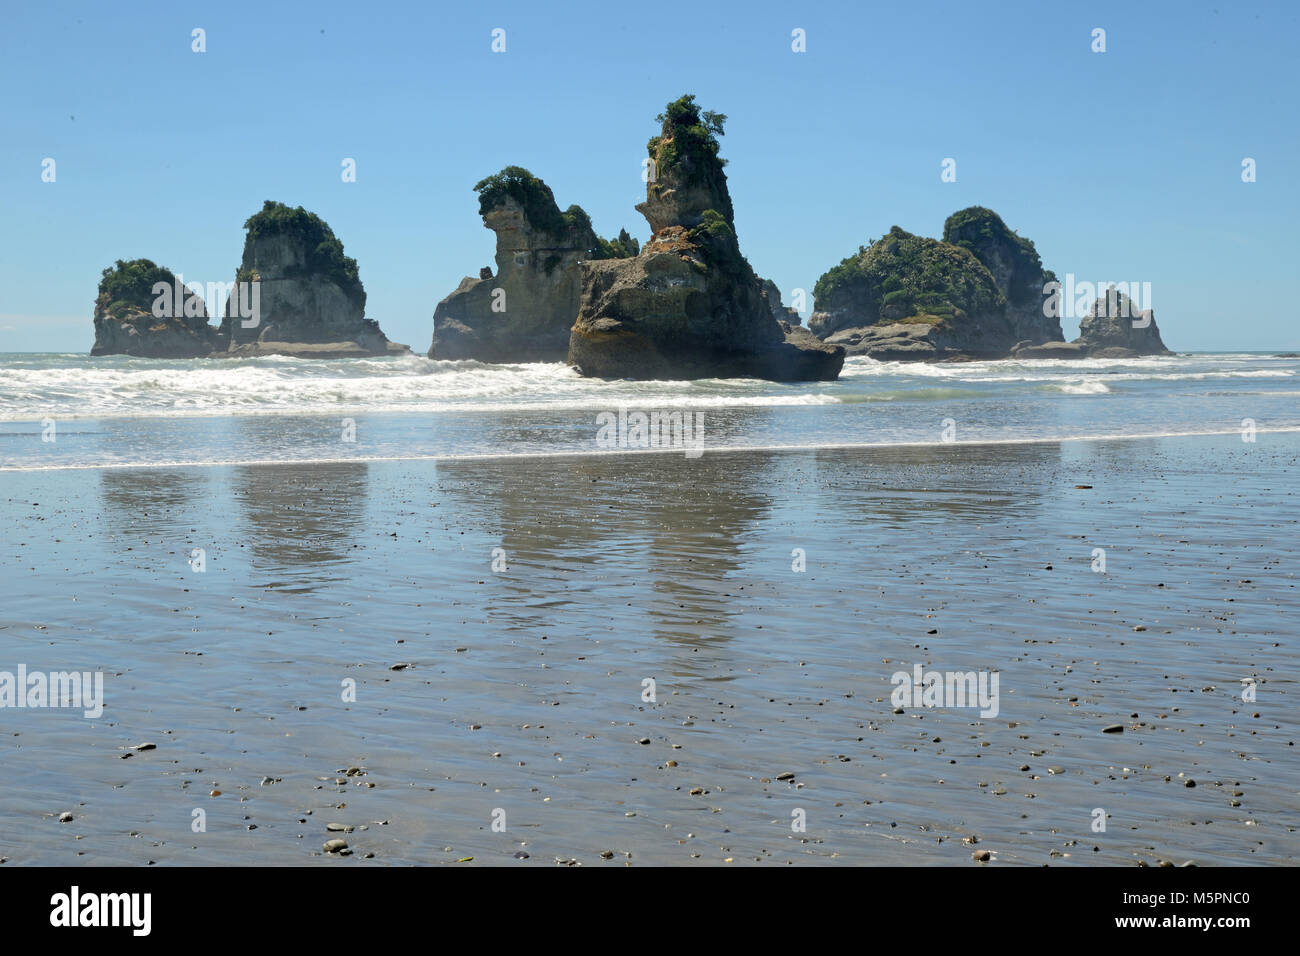 Marea baja en una playa de la costa oeste revela un grupo de pequeñas islas, Isla del Sur, Nueva Zelanda Foto de stock